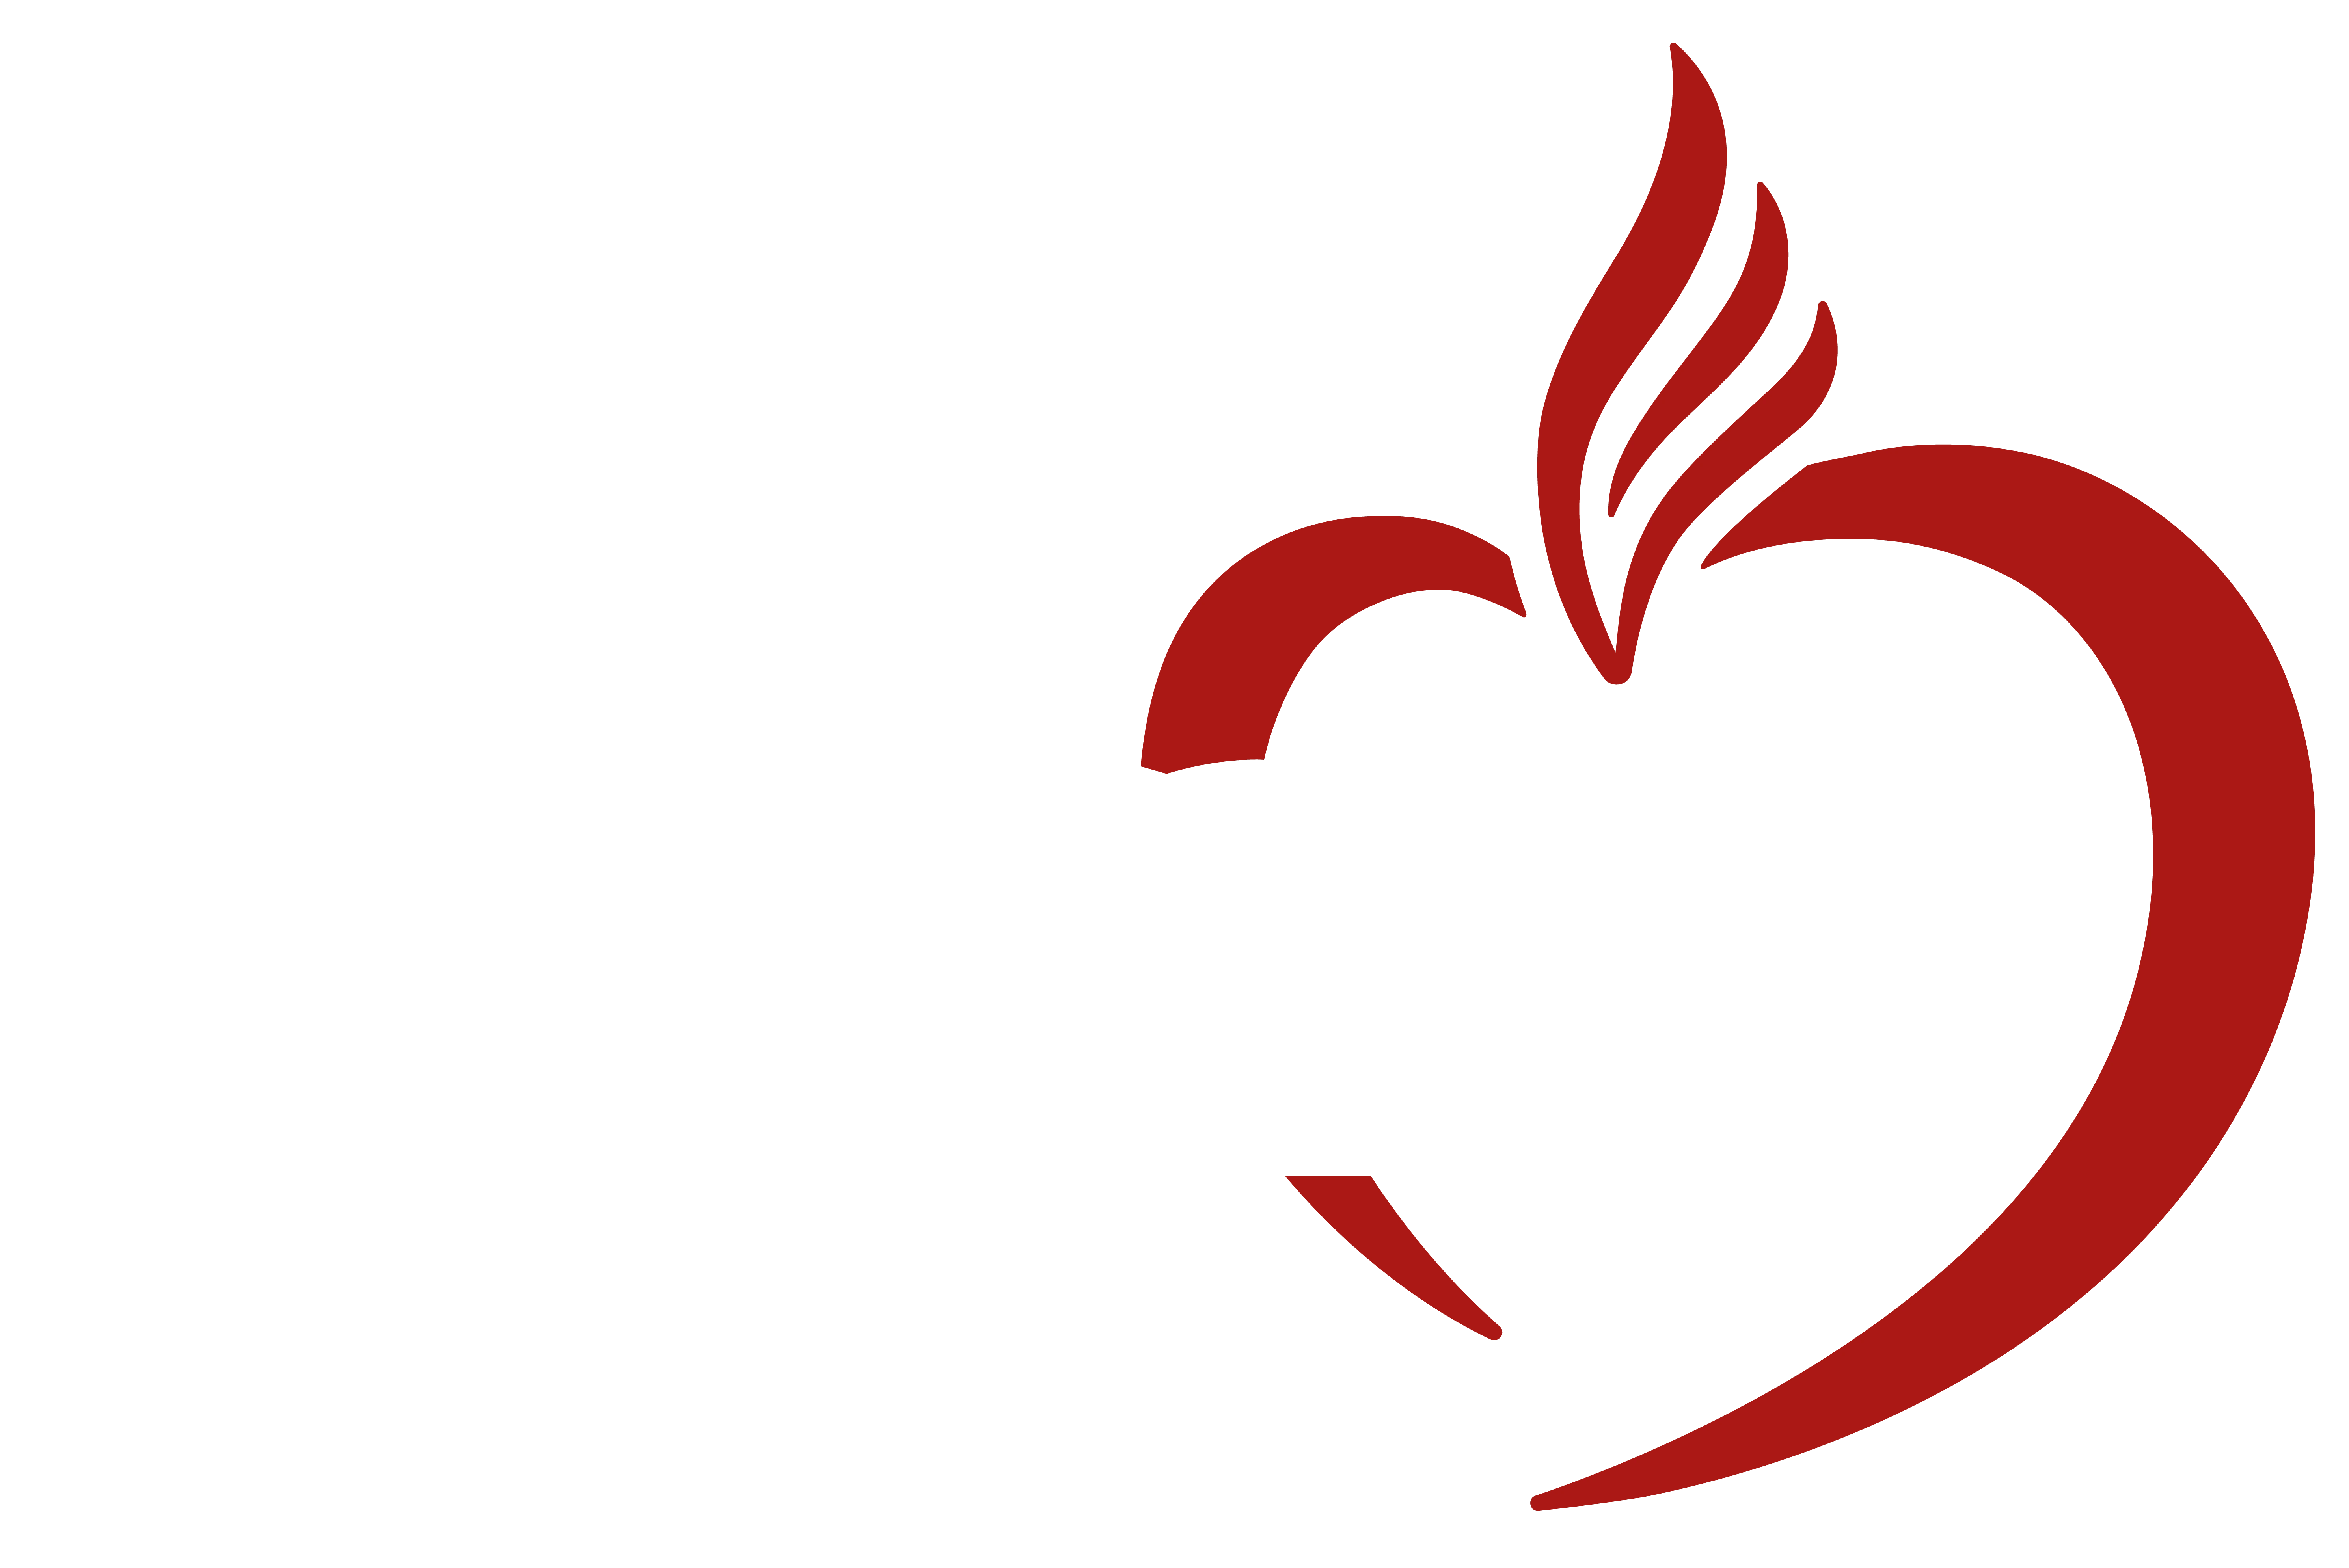 Logo SAGRADO - Rede de Educação